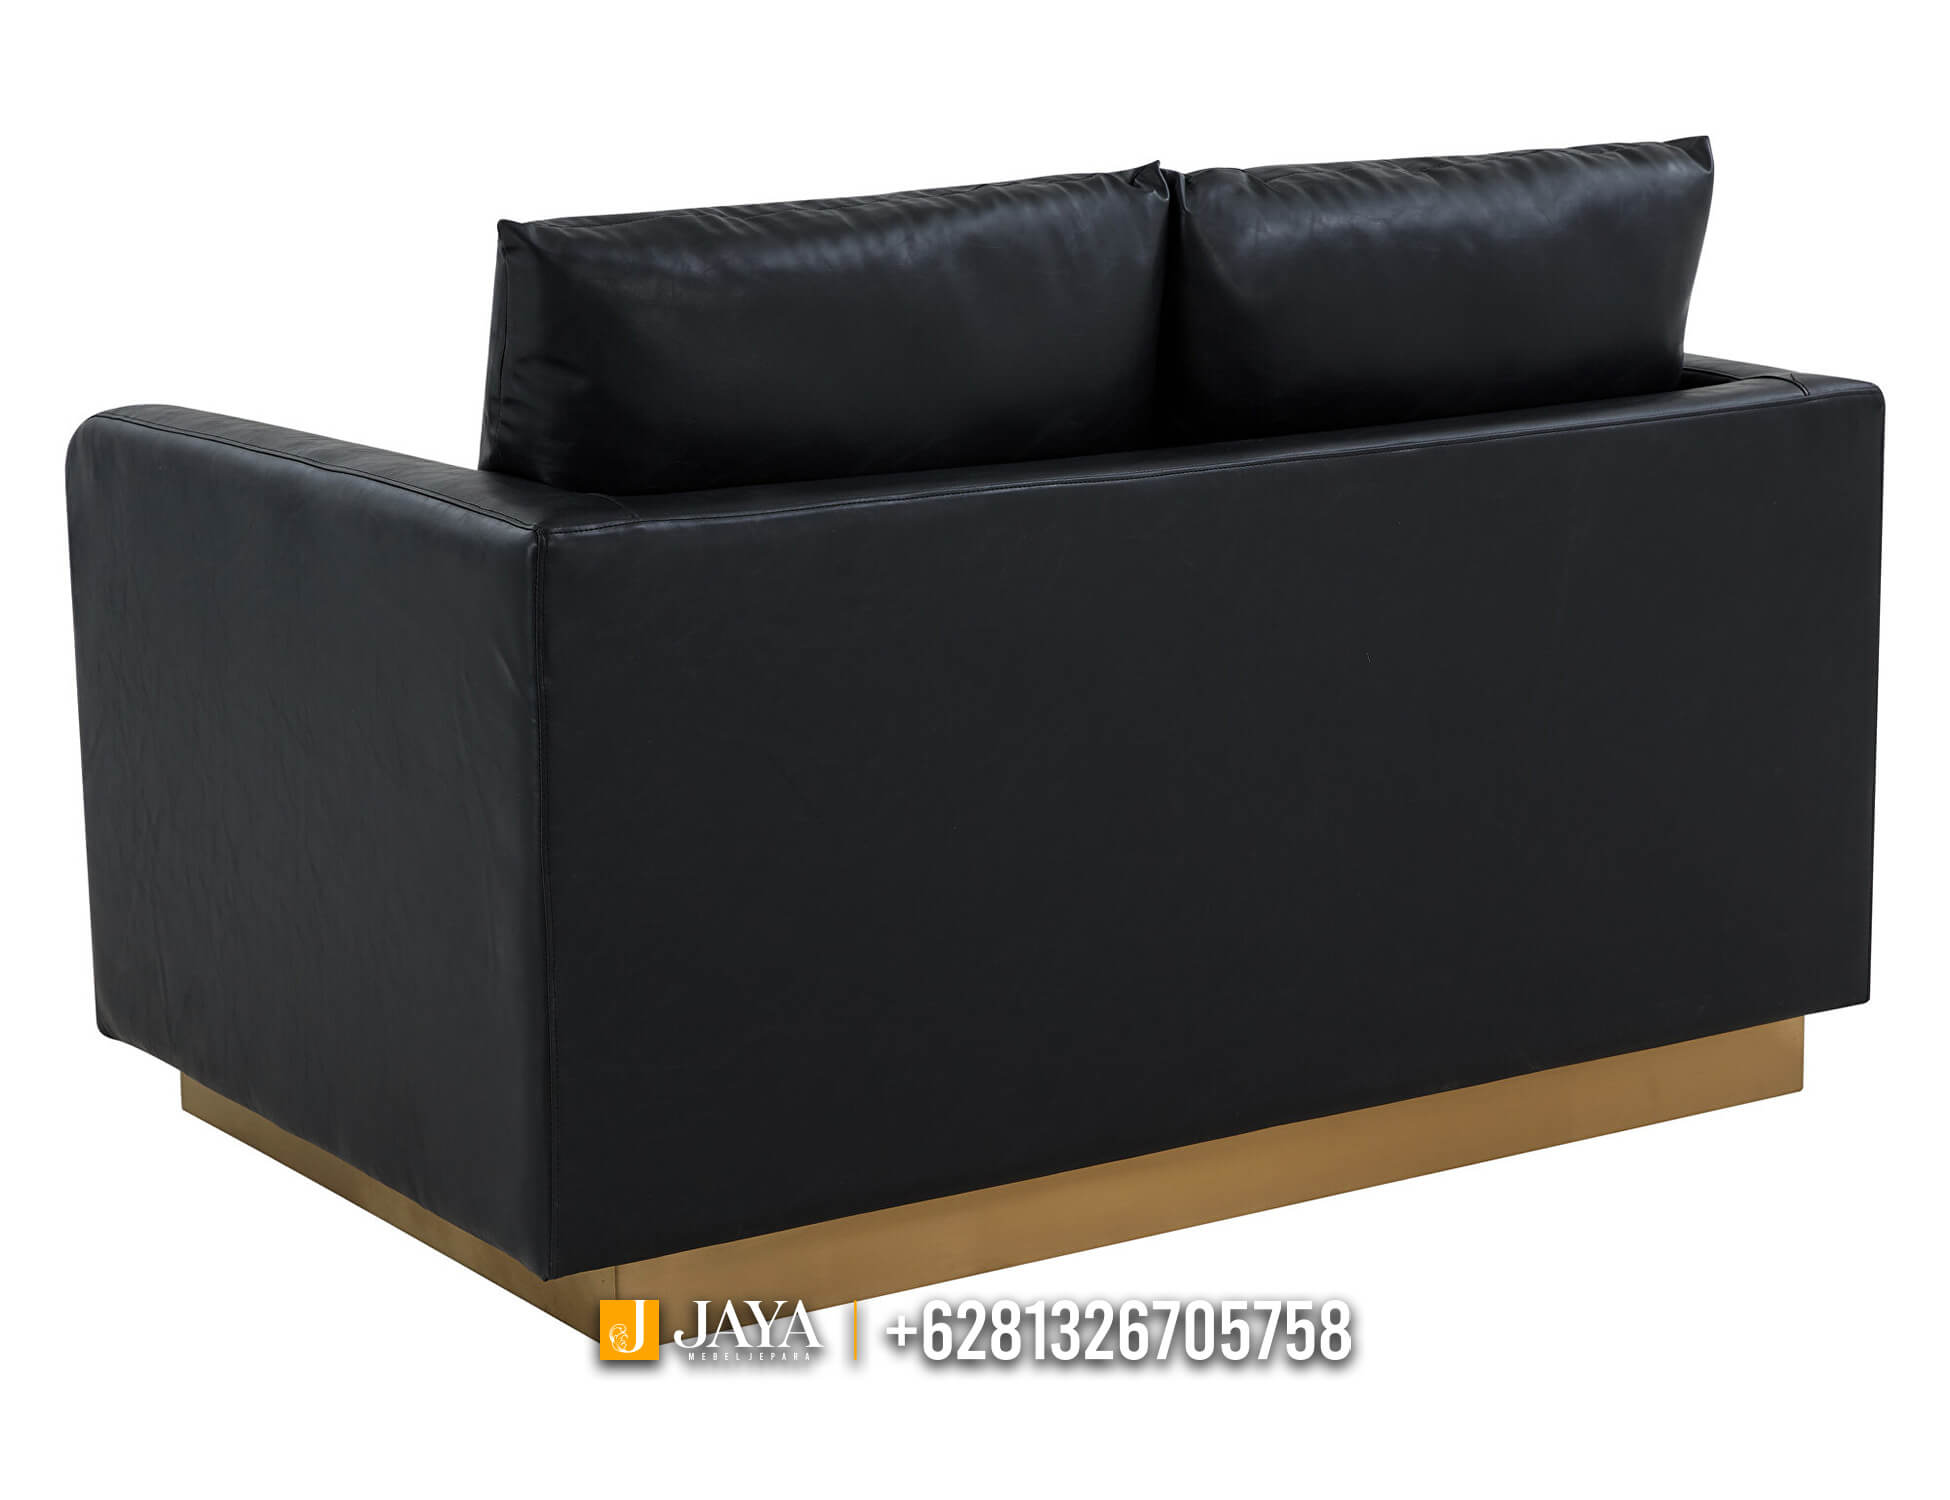 Desain Sofa Minimalis Terbaru 2 Seater Elegant Model JM767.1